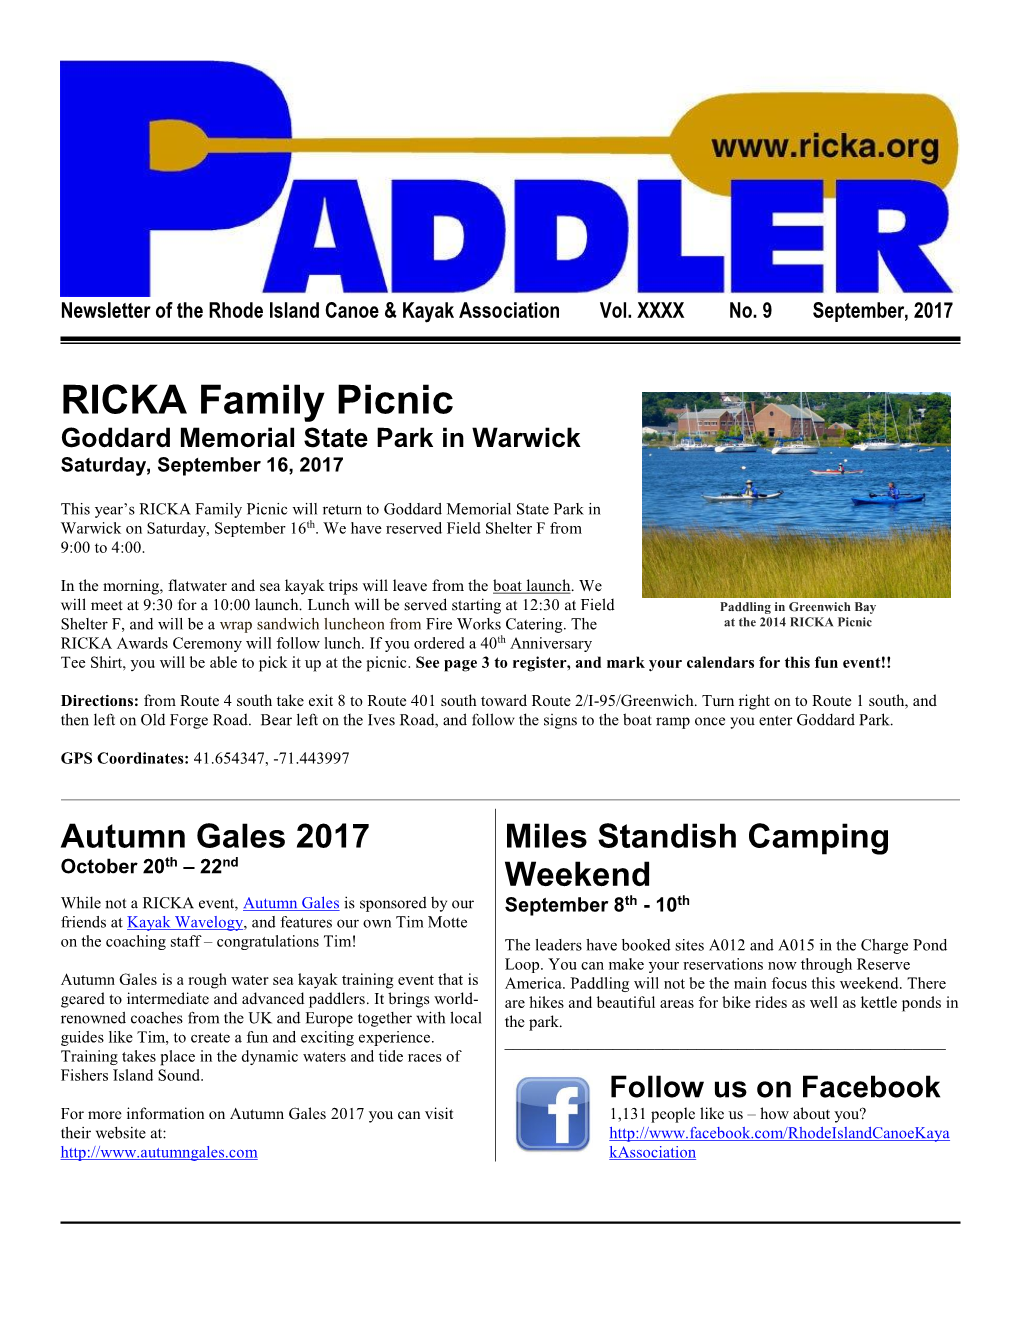 RICKA Family Picnic Goddard Memorial State Park in Warwick Saturday, September 16, 2017